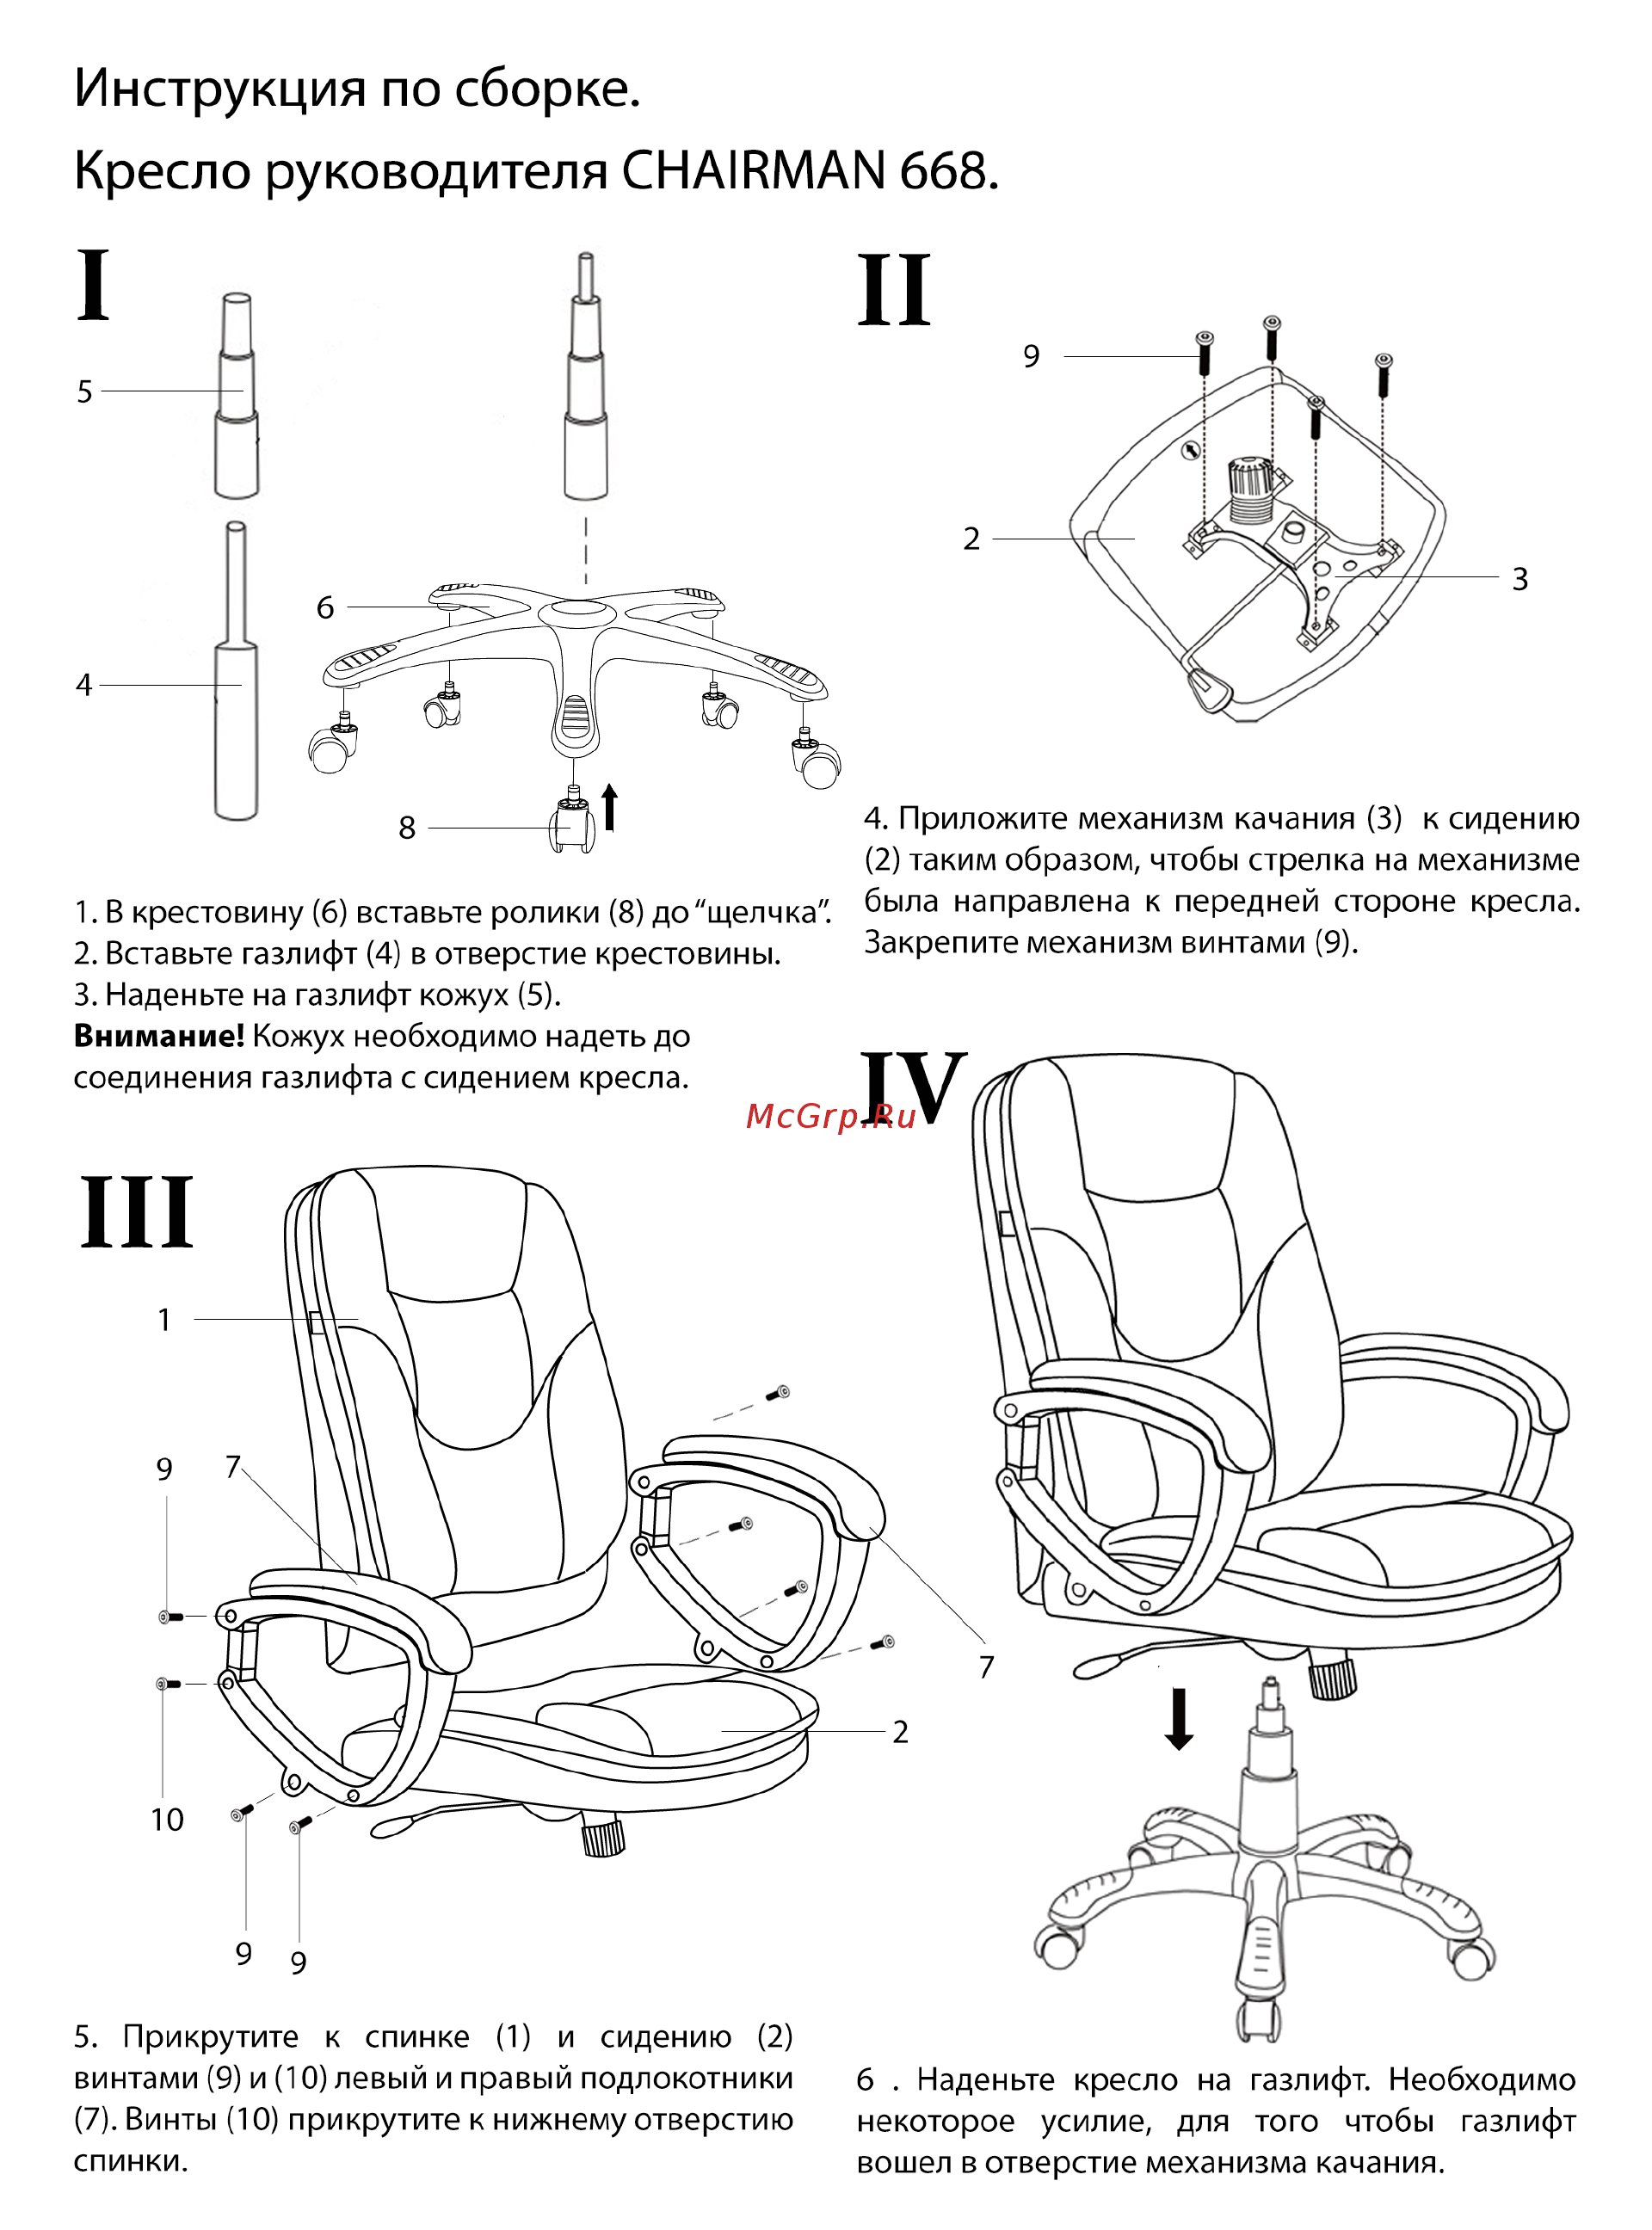 Как разобрать компьютерное кресло своими руками: пошаговая инструкция, правила ремонта